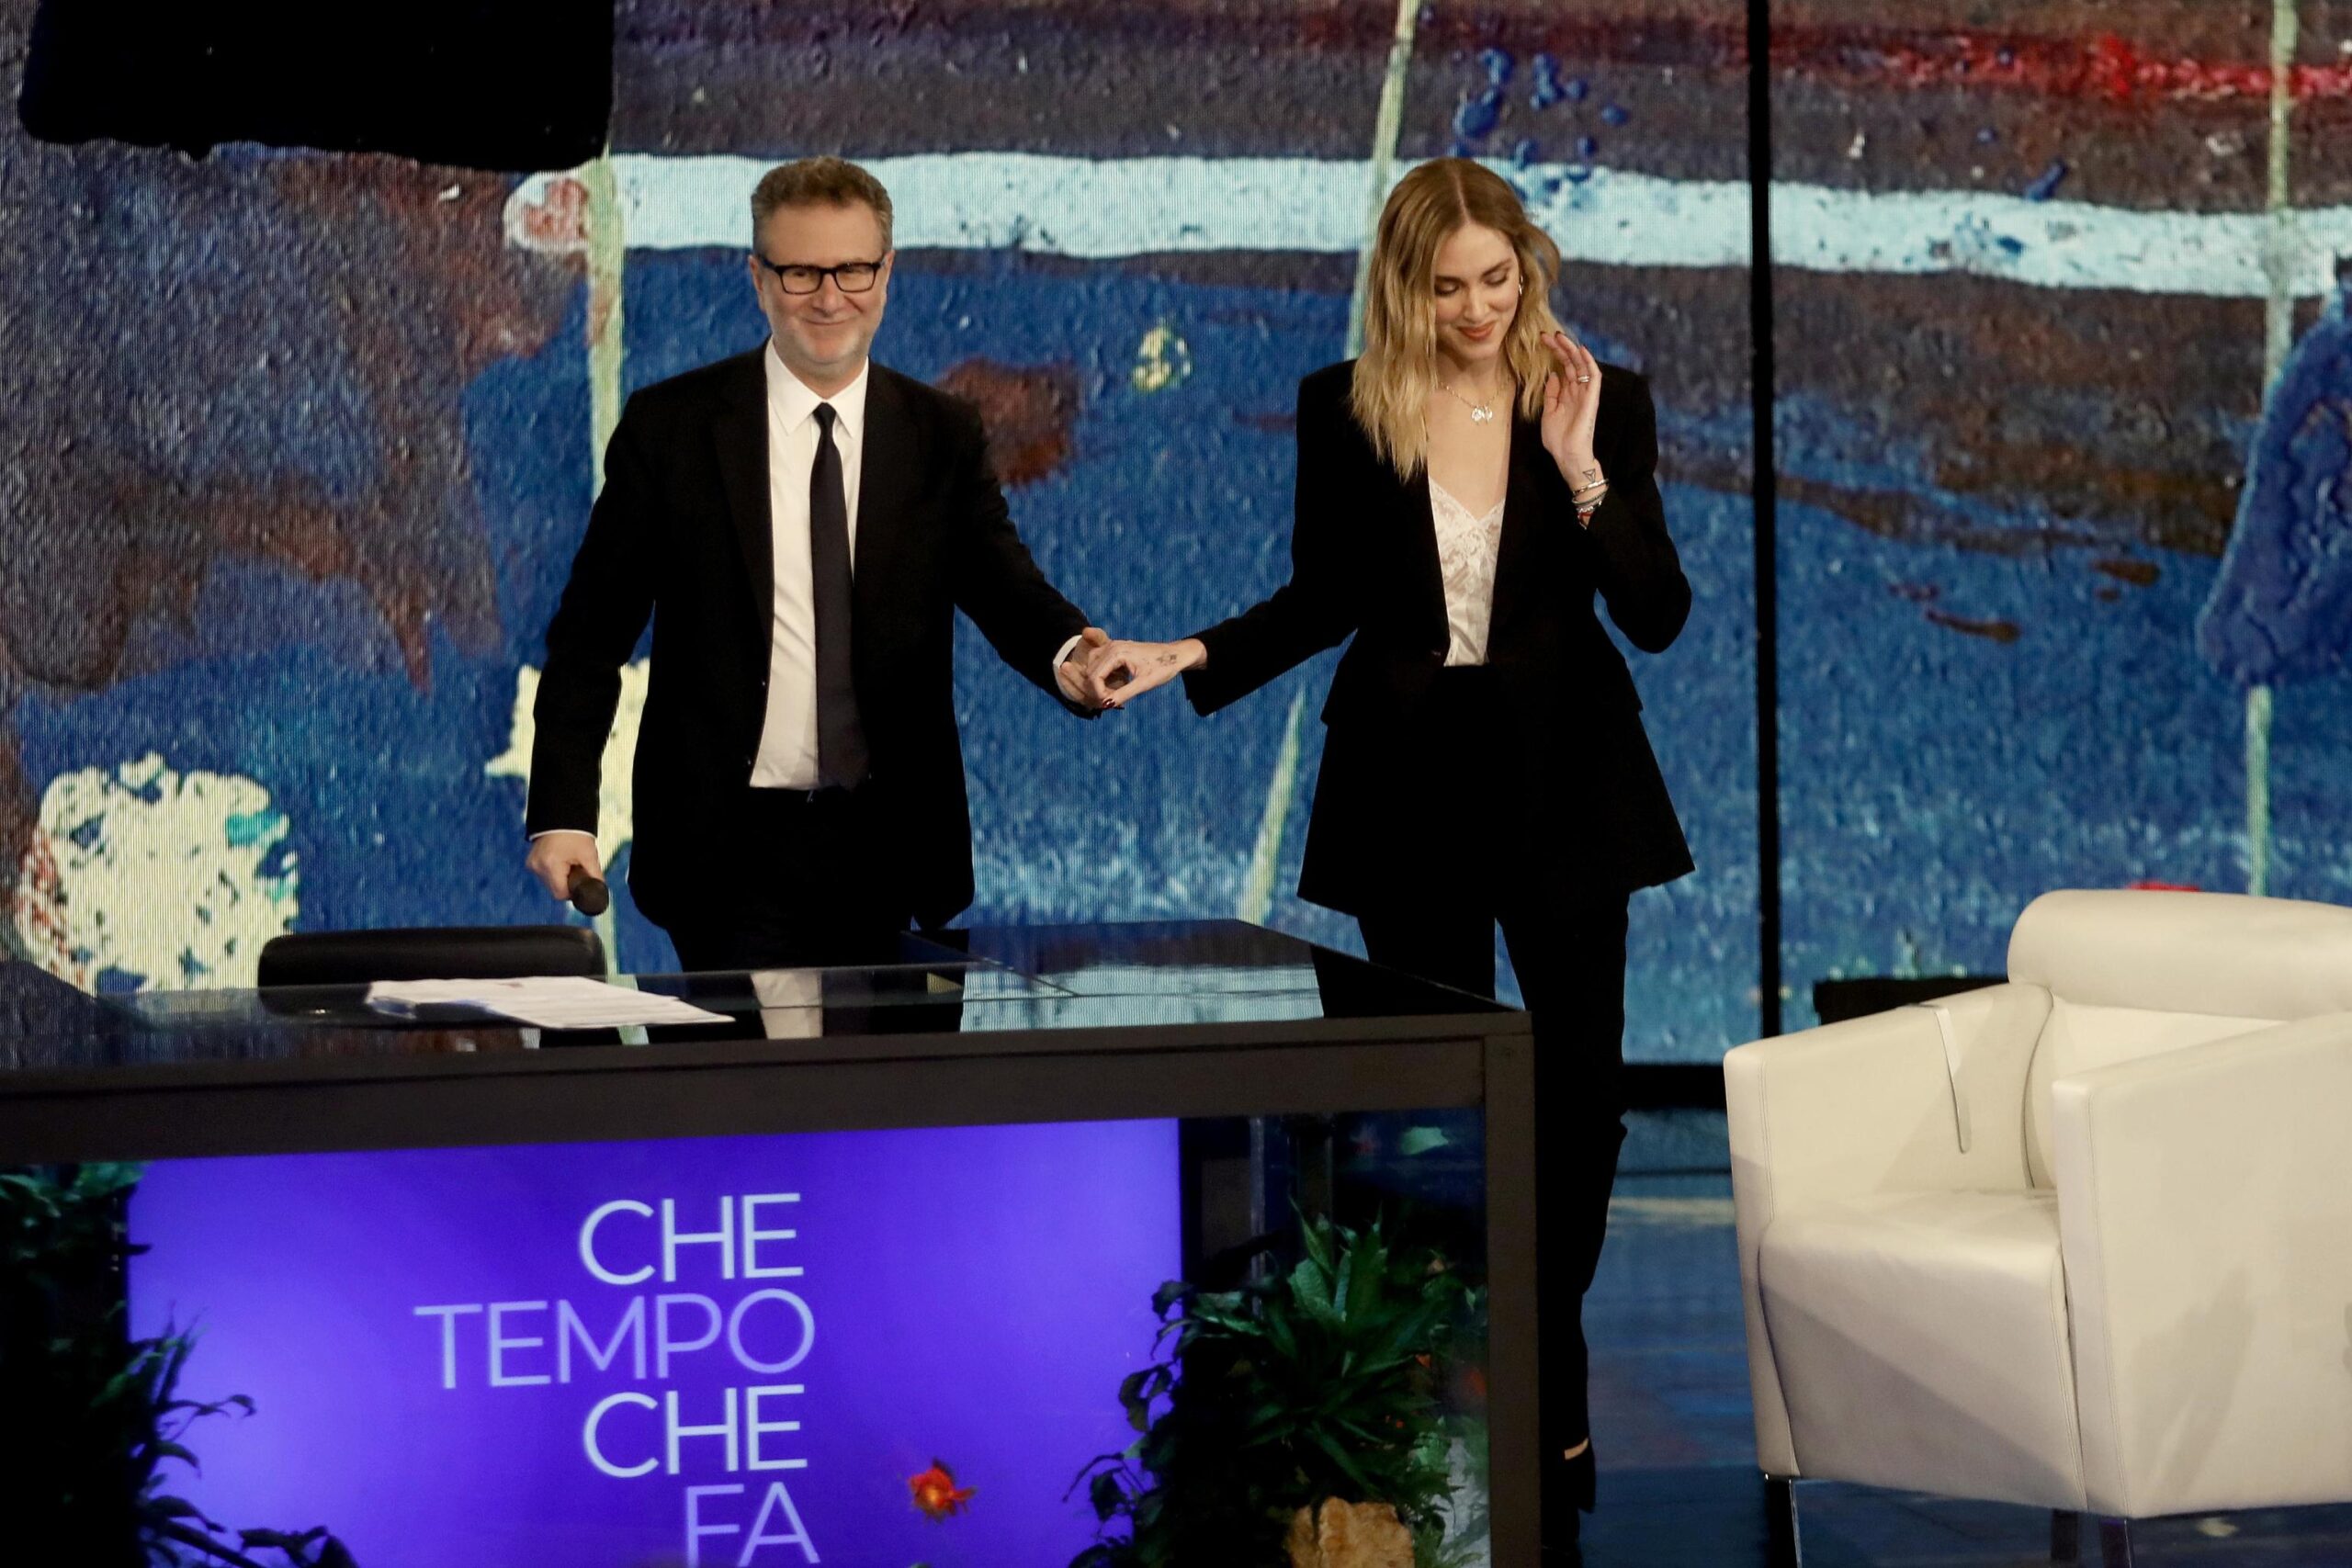 Chiara Ferragni meglio di Beppe Grillo e Papa Francesco, esulta Fabio Fazio: con lei la puntata record di Che tempo che fa